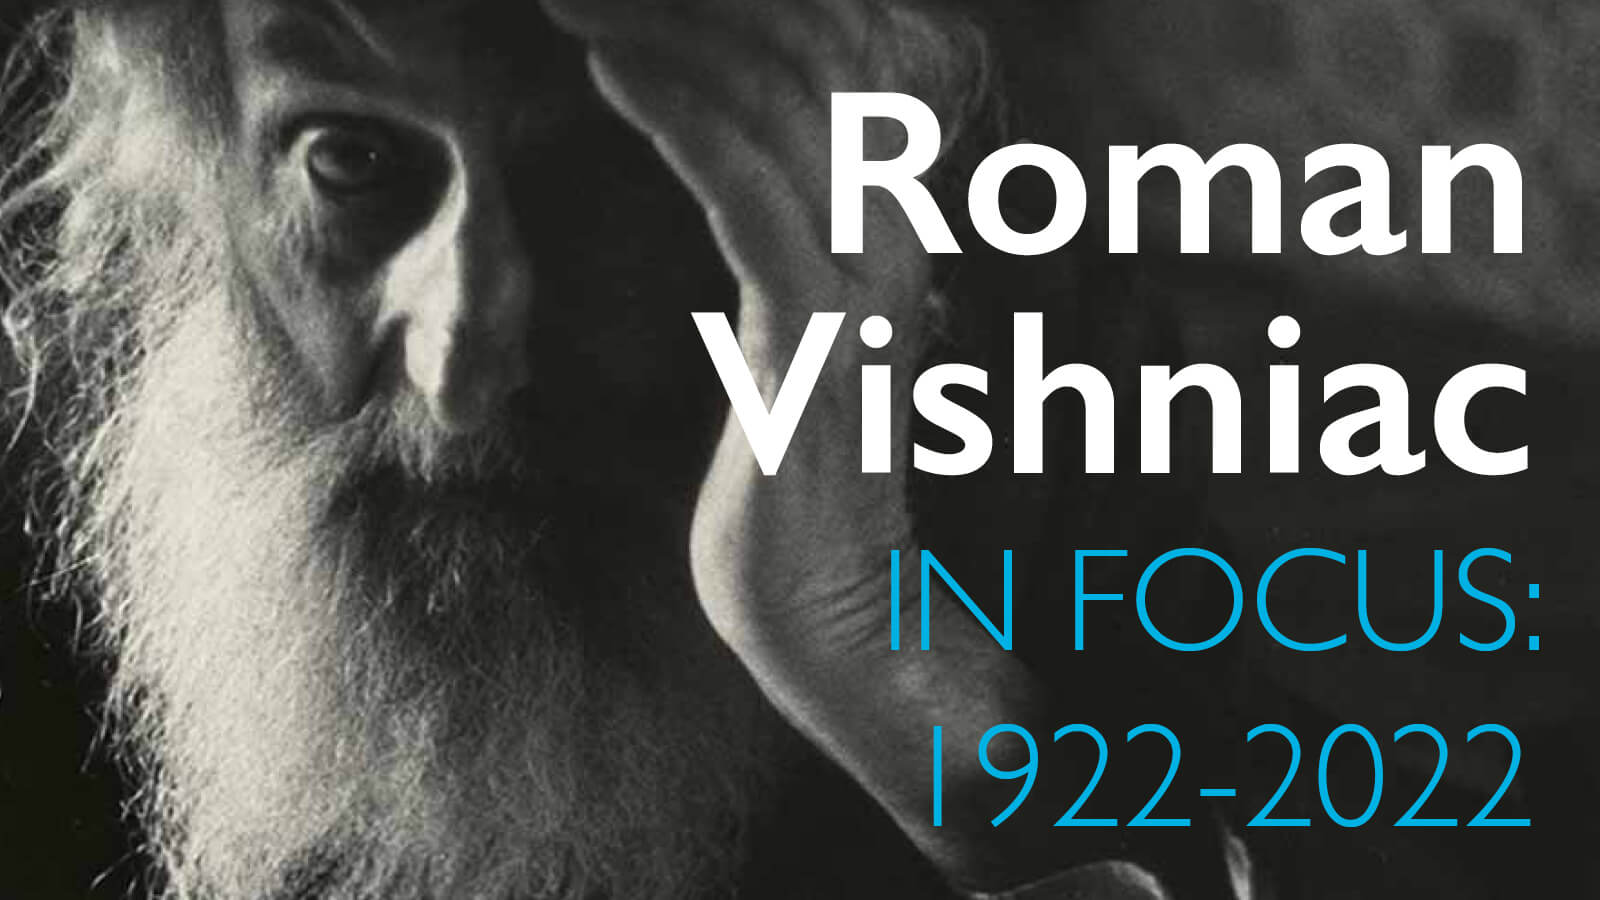 Roman Vishniac. In Focus: 1922-2022